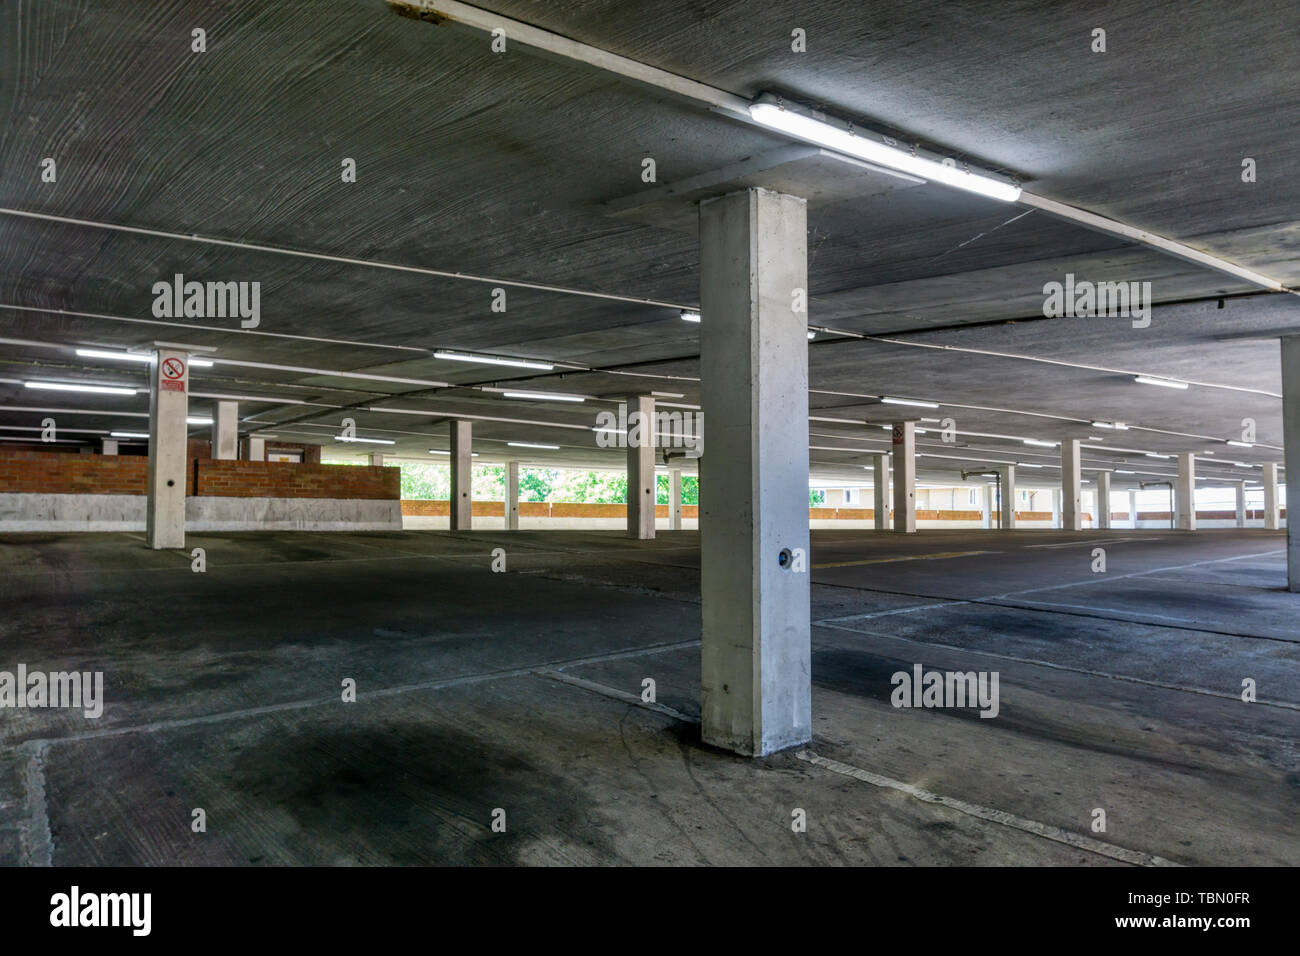 Étage vide ou le niveau d'un parking à plusieurs étages. Banque D'Images